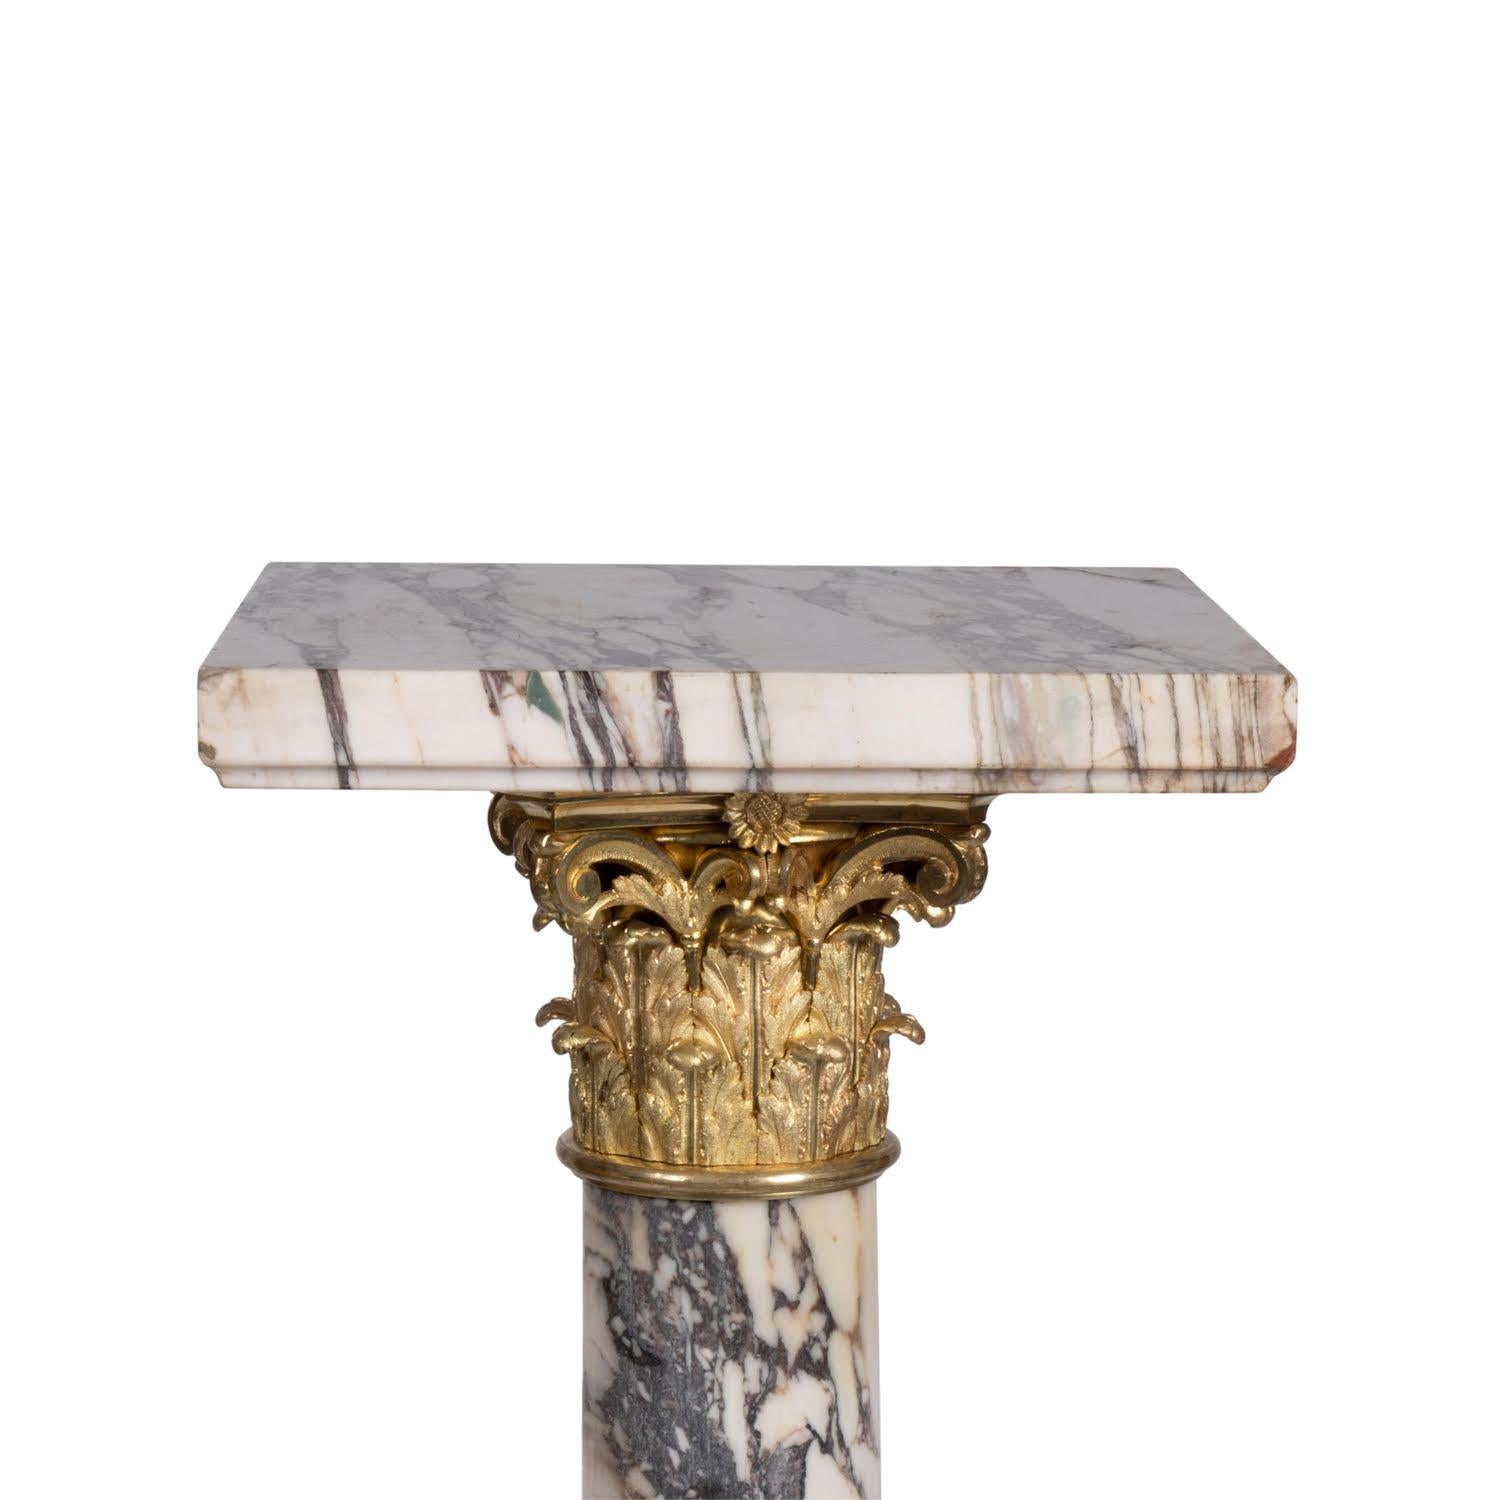 Stele, colonne en marbre et bronze doré du 19ème siècle

Colonne en marbre et bronze doré d'époque Napoléon III, XIXe siècle.  
H : 120cm, L : 35cm, P : 35cm